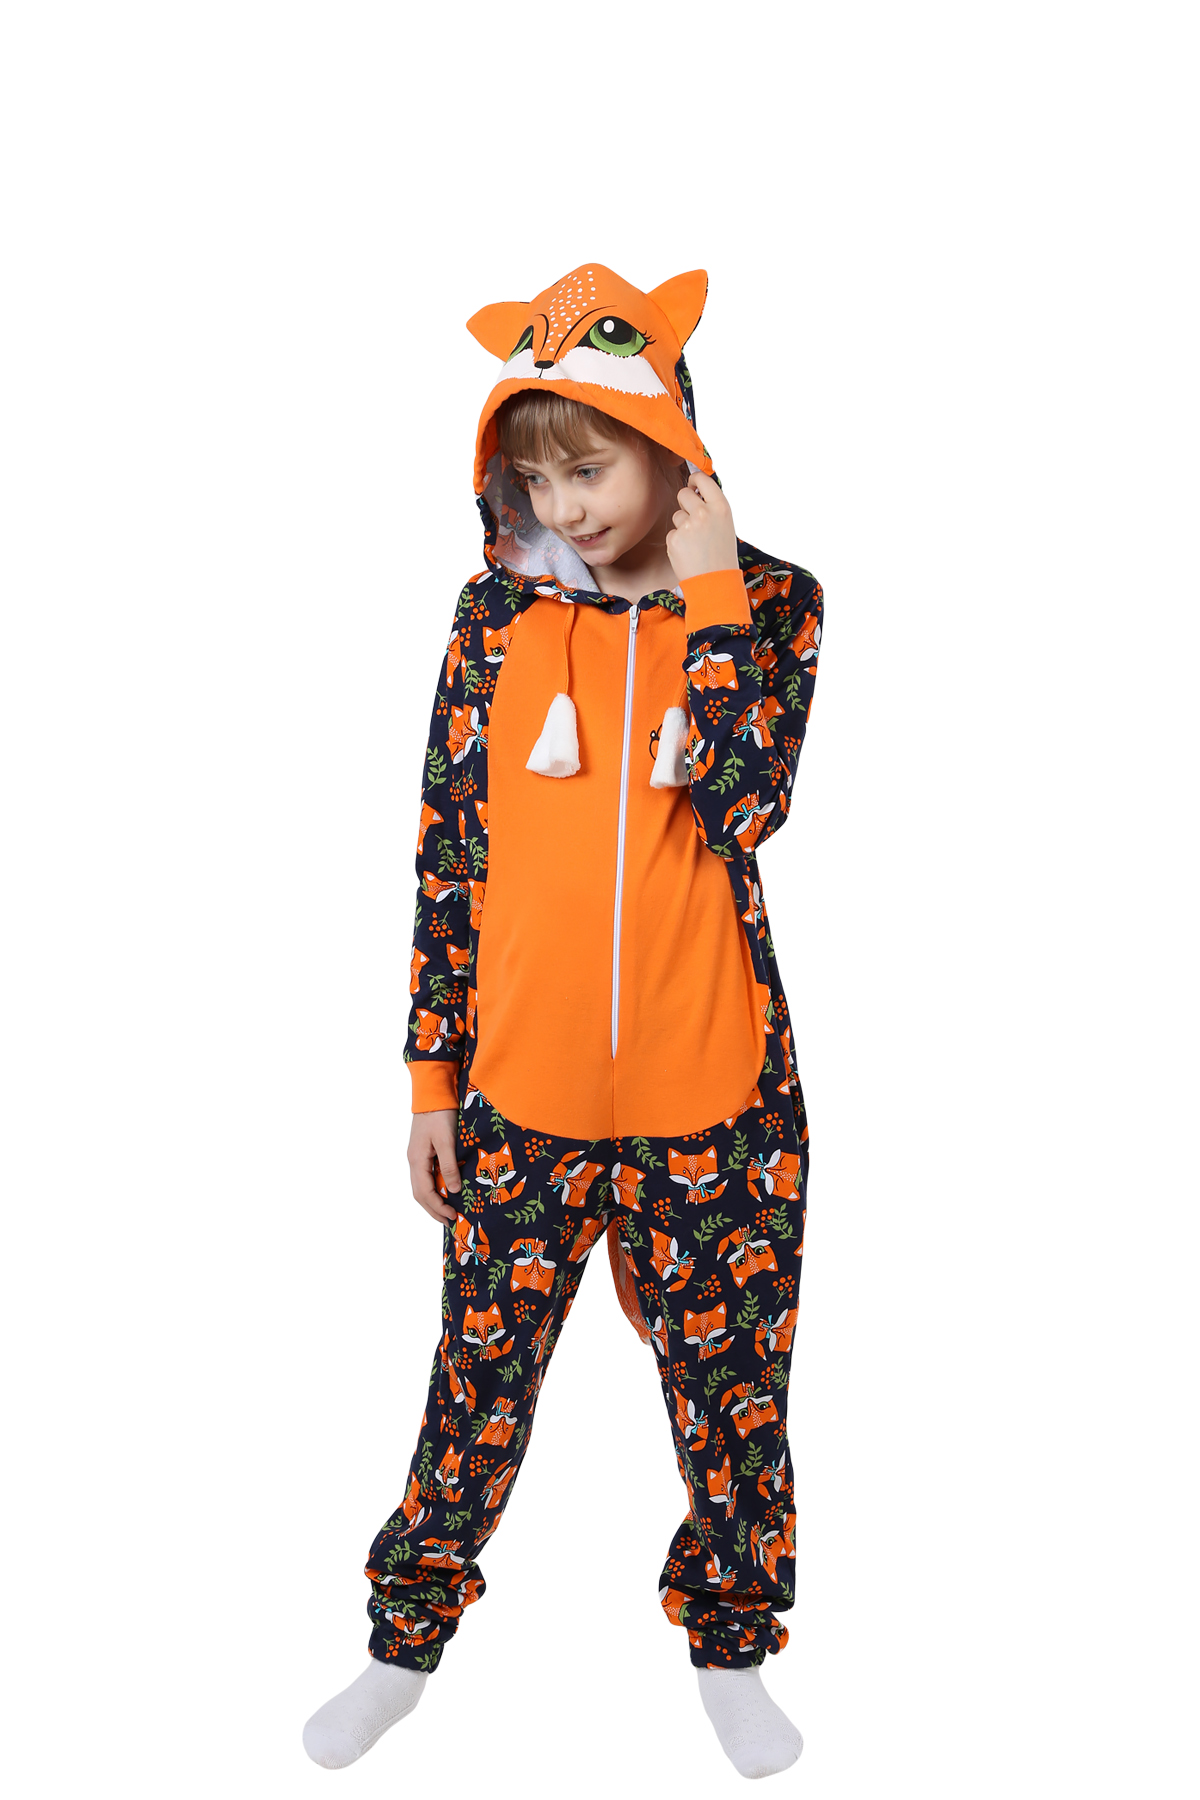 Детская пижама-кигуруми Лиса Цвет: Оранжевый (6-7 лет), размер 6-7 лет otj636467 Детская пижама-кигуруми Лиса Цвет: Оранжевый (6-7 лет) - фото 1